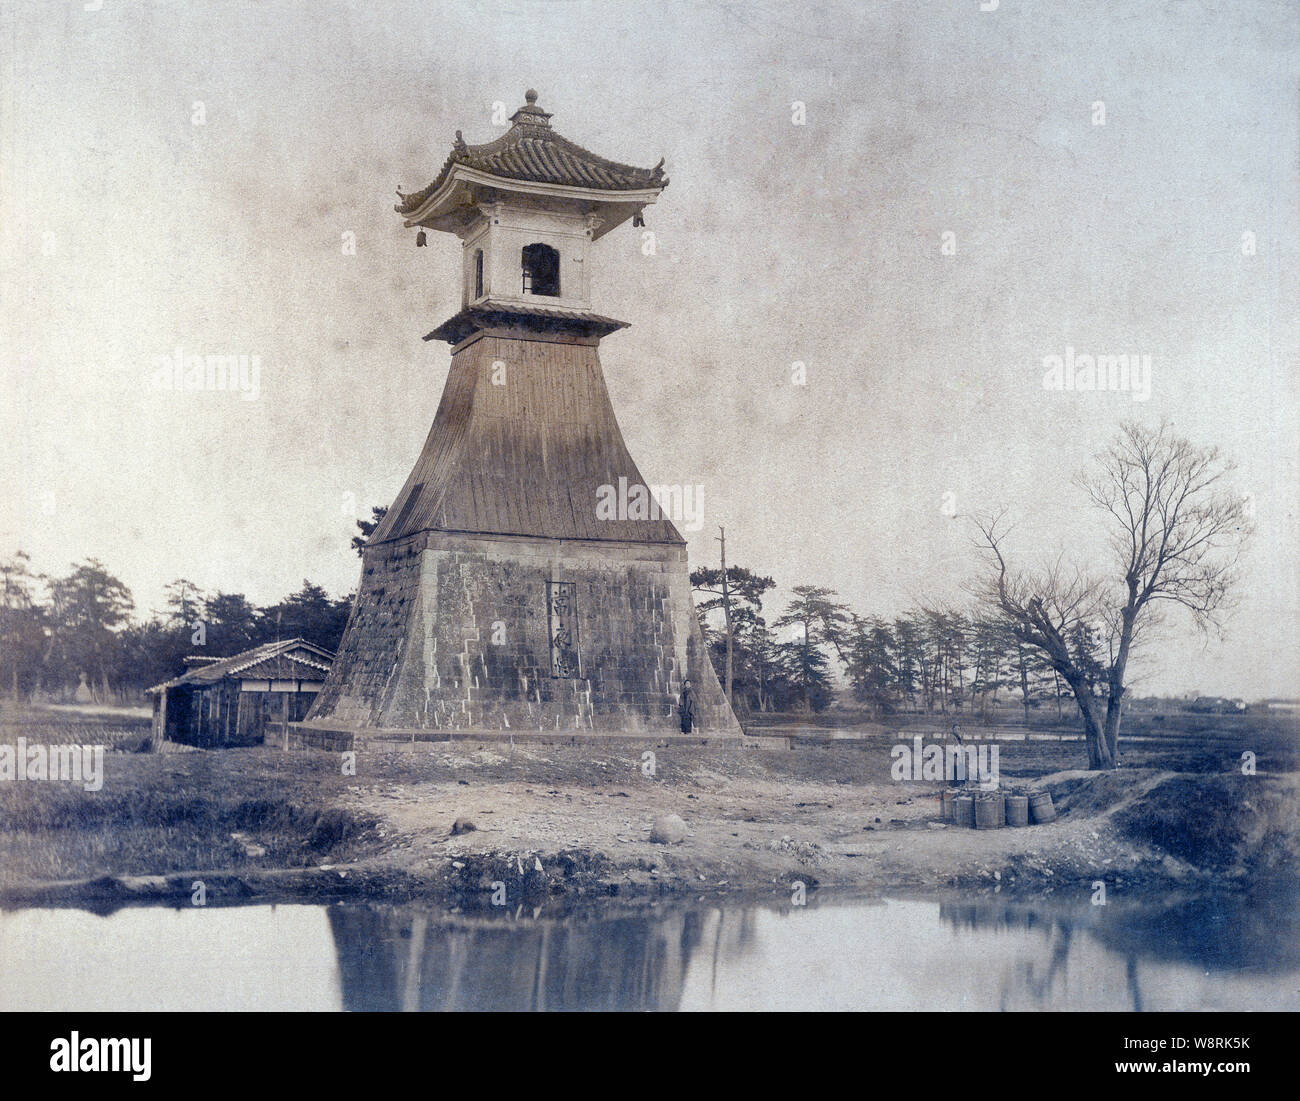 [ 1890 Giappone - Sumiyoshi Lighthouse, Osaka ] - Sumiyoshi Taka-doro faro in Sumiyoshi-ura, Osaka. La torre fu distrutta dal tifone Jane nel 1950 (Showa 25) e ricostruita in pietra. Il faro, che bruciò l'olio di colza è stato realizzato come un sacrificio alla divinità custode del Santuario Sumiyoshi alla fine del periodo Kamakura (1185-1333), rendendo il Giappone il più antico faro del. Xix secolo albume vintage fotografia. Foto Stock